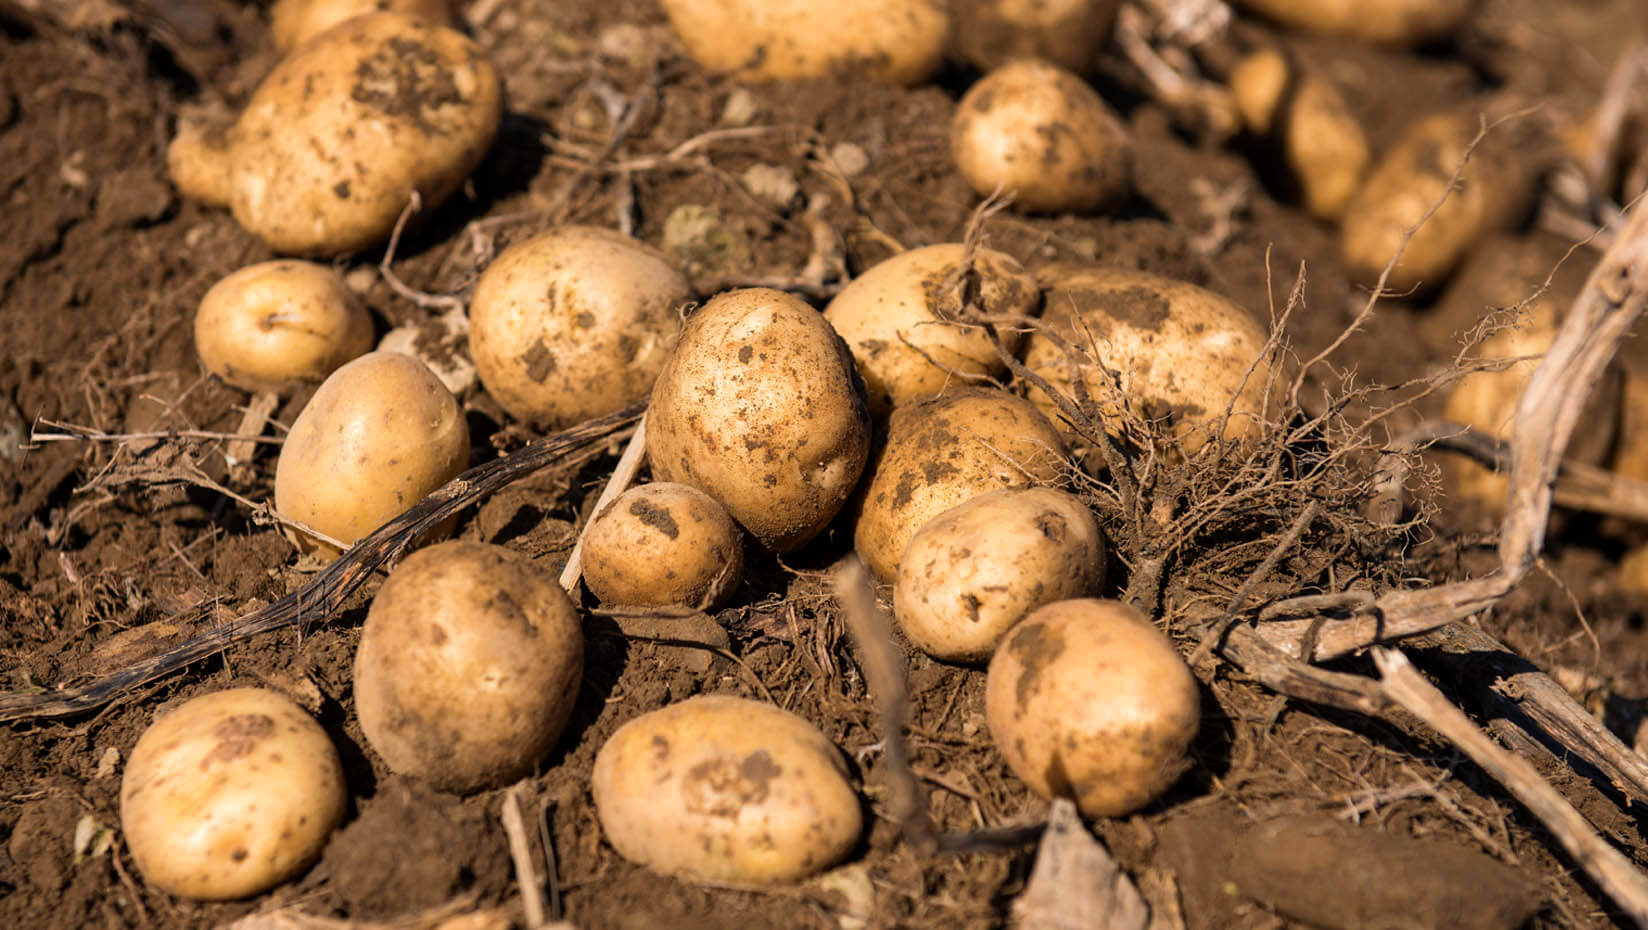 Potatoes in a field